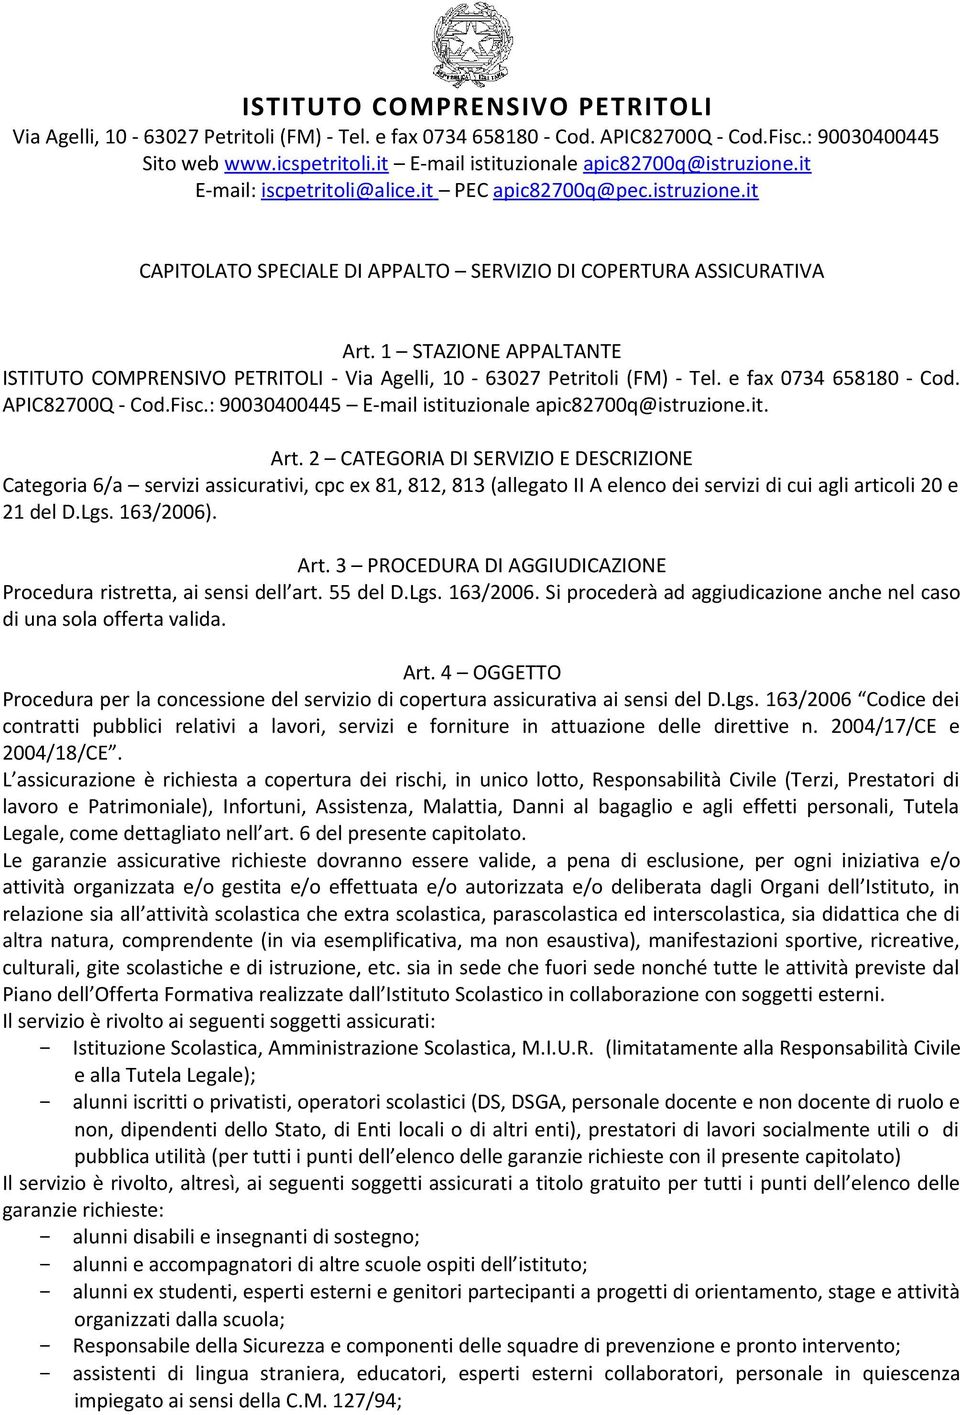 1 STAZIONE APPALTANTE ISTITUTO COMPRENSIVO PETRITOLI - Via Agelli, 10-63027 Petritoli (FM) - Tel. e fax 0734 658180 - Cod. APIC82700Q - Cod.Fisc.